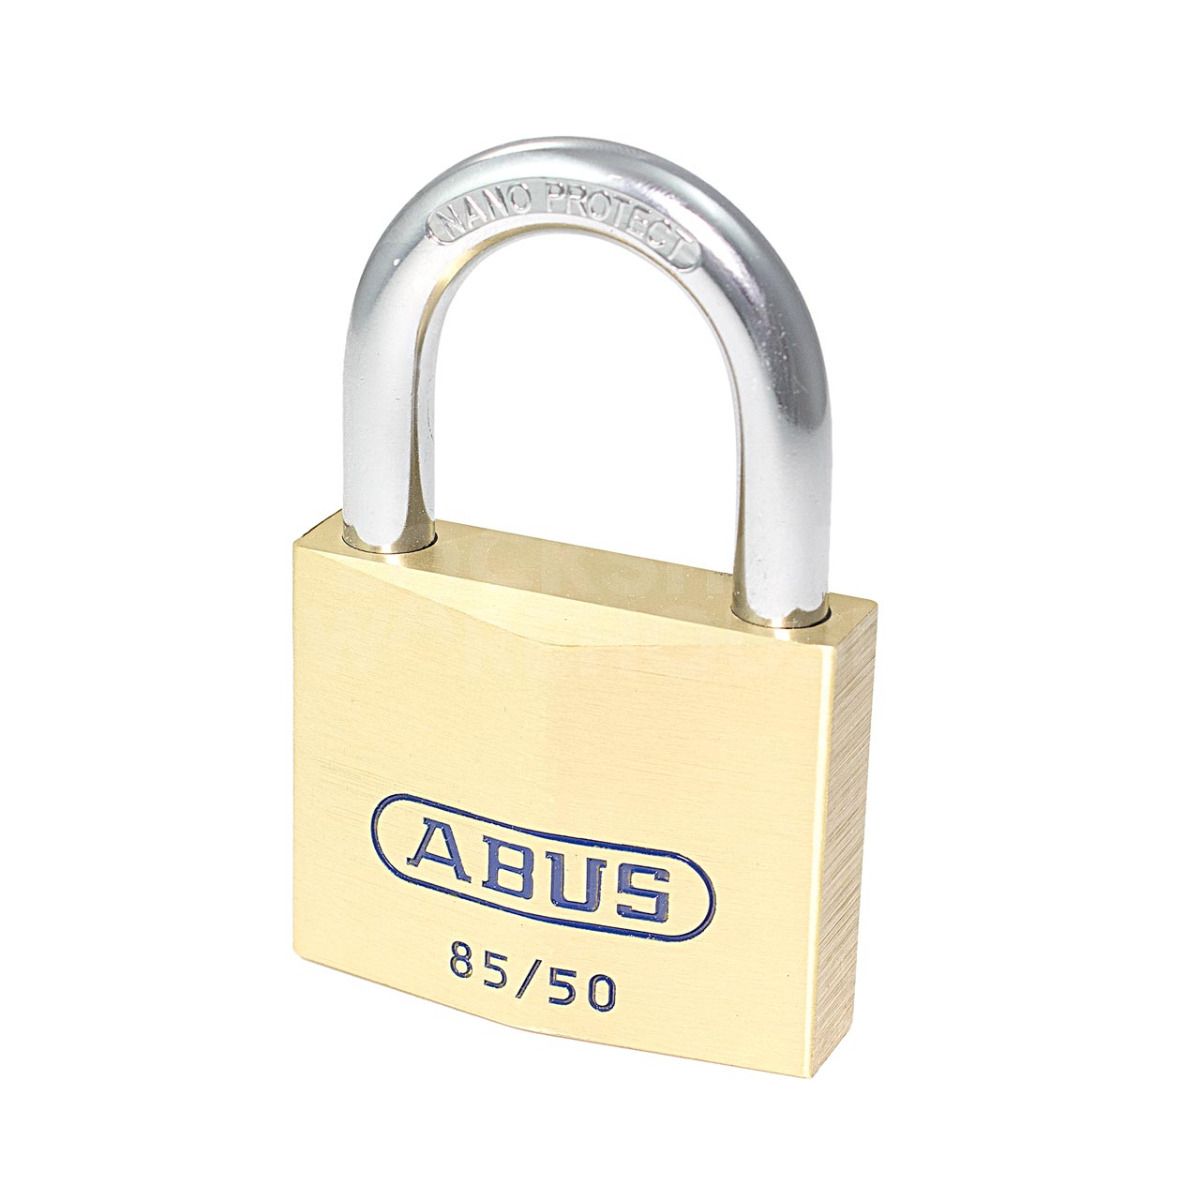 ABUS 85/50 Brass Padlock